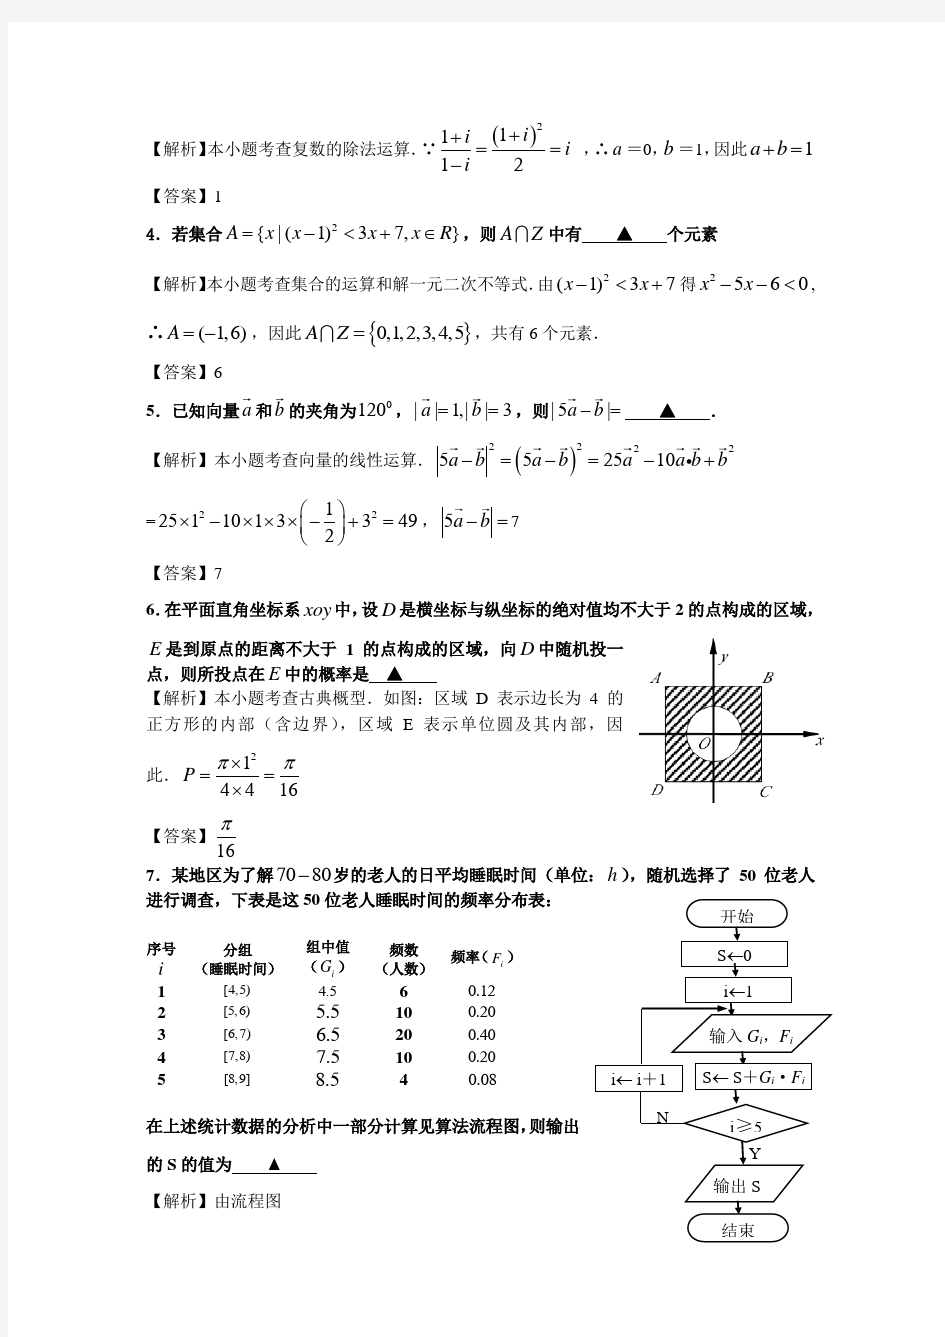 高考江苏数学试卷含附加题详细答案全版